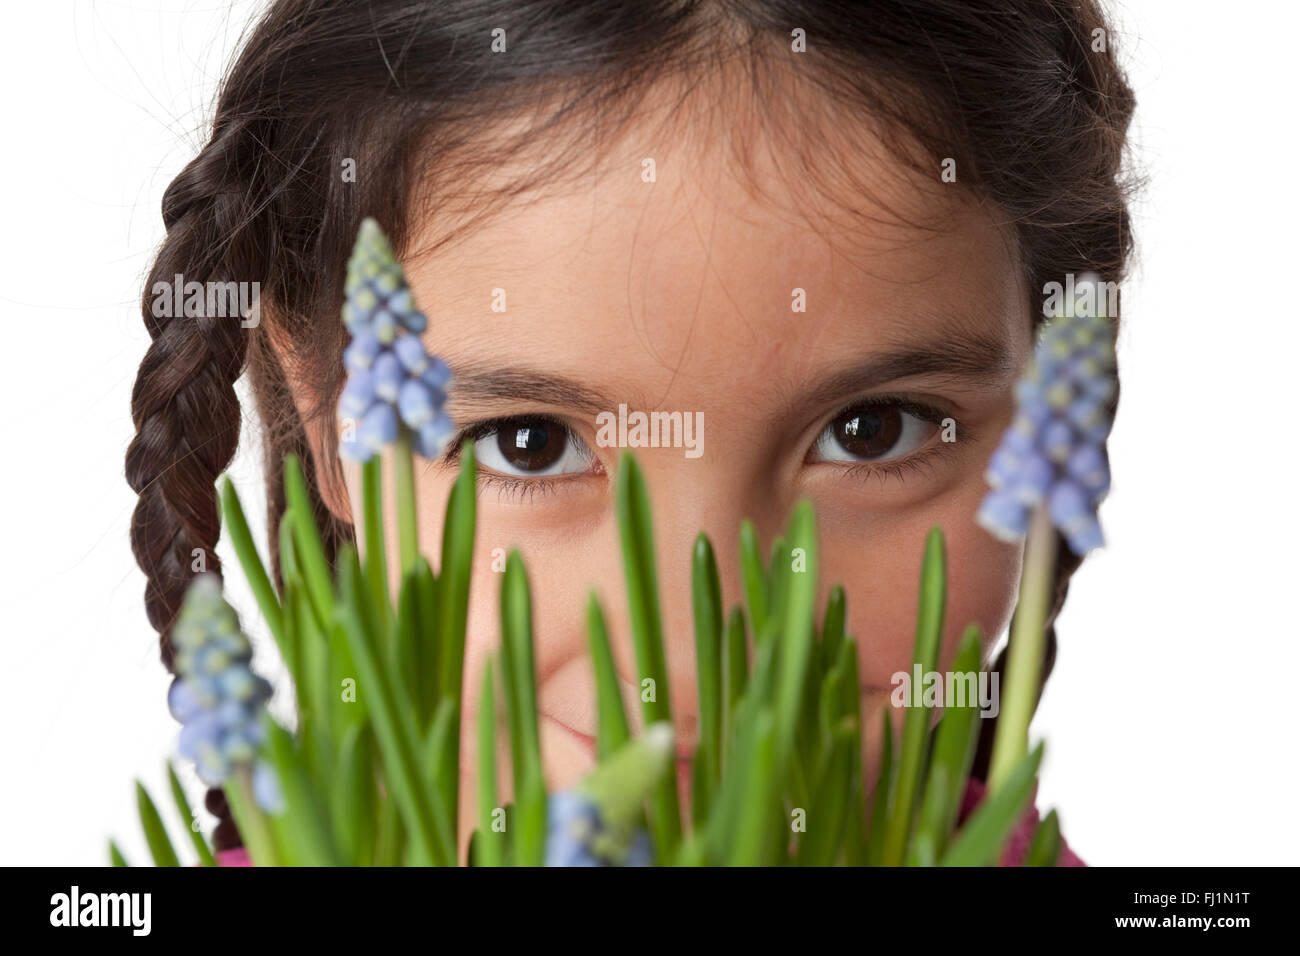 Printemps, portrait d'une petite fille aux fleurs muscari sur fond blanc Banque D'Images